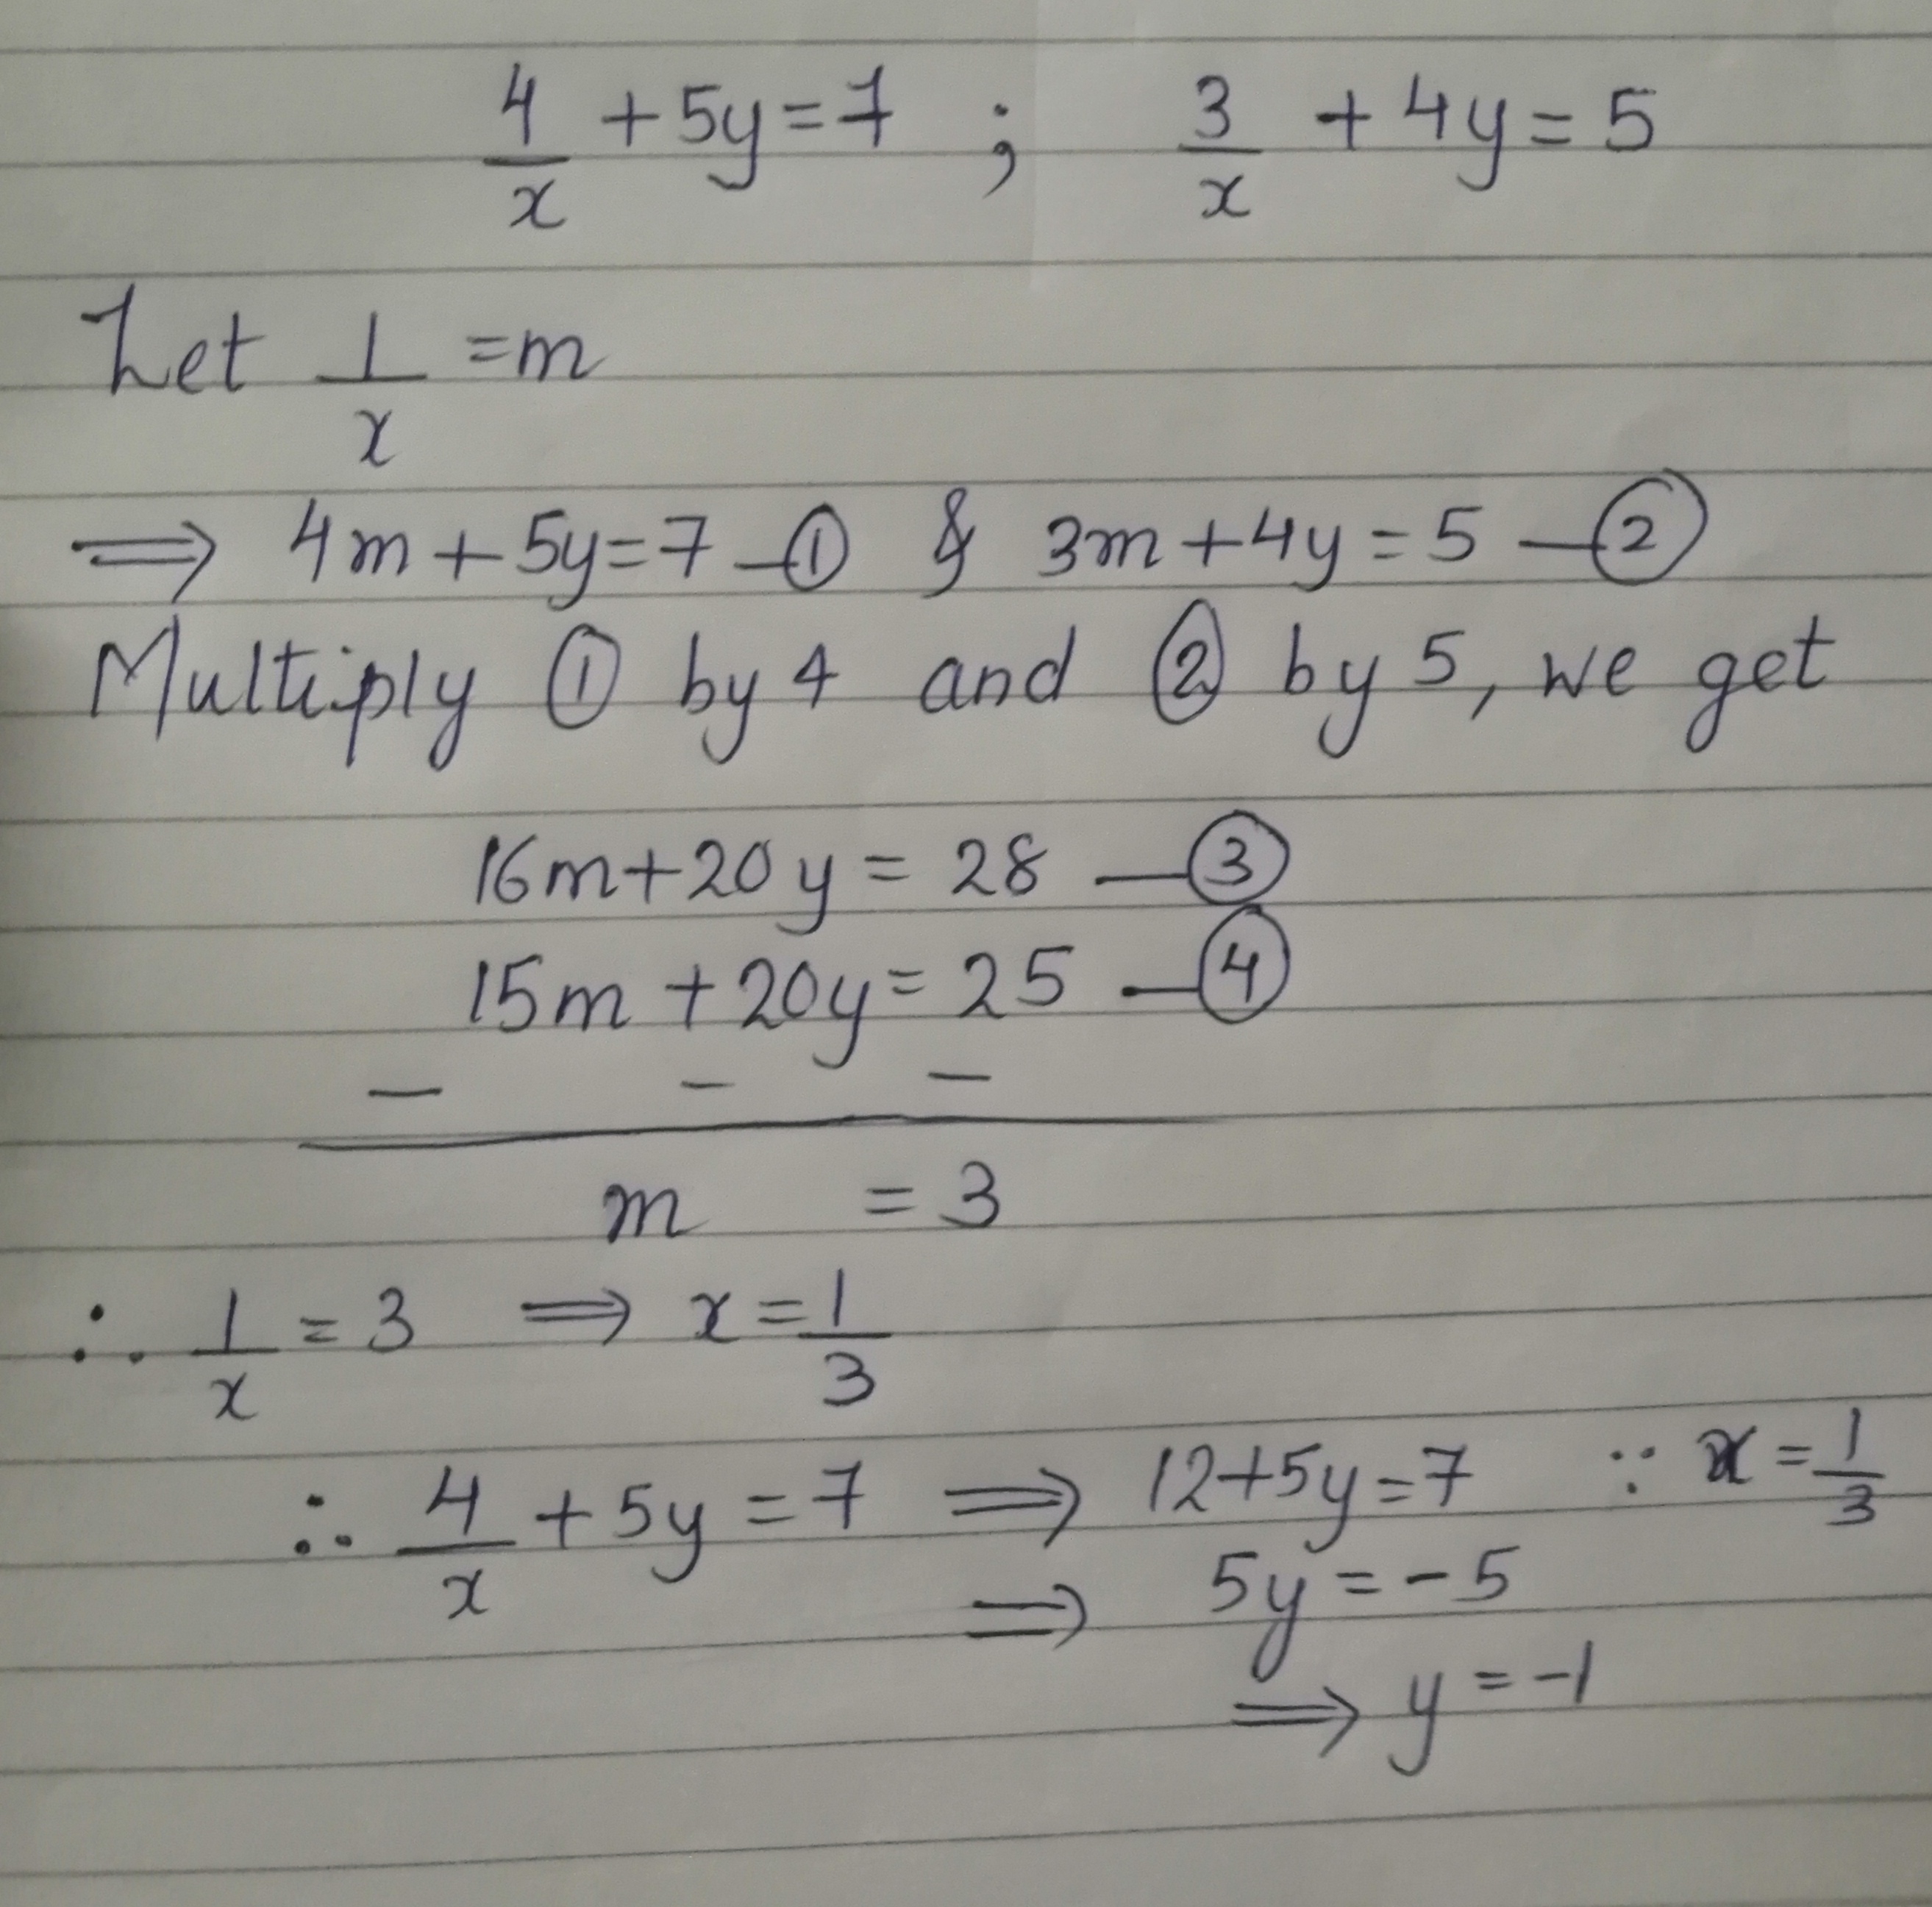 4 X 5y 7 3 X 4y 5 Mathematics Topperlearning Com Eyz2xh55